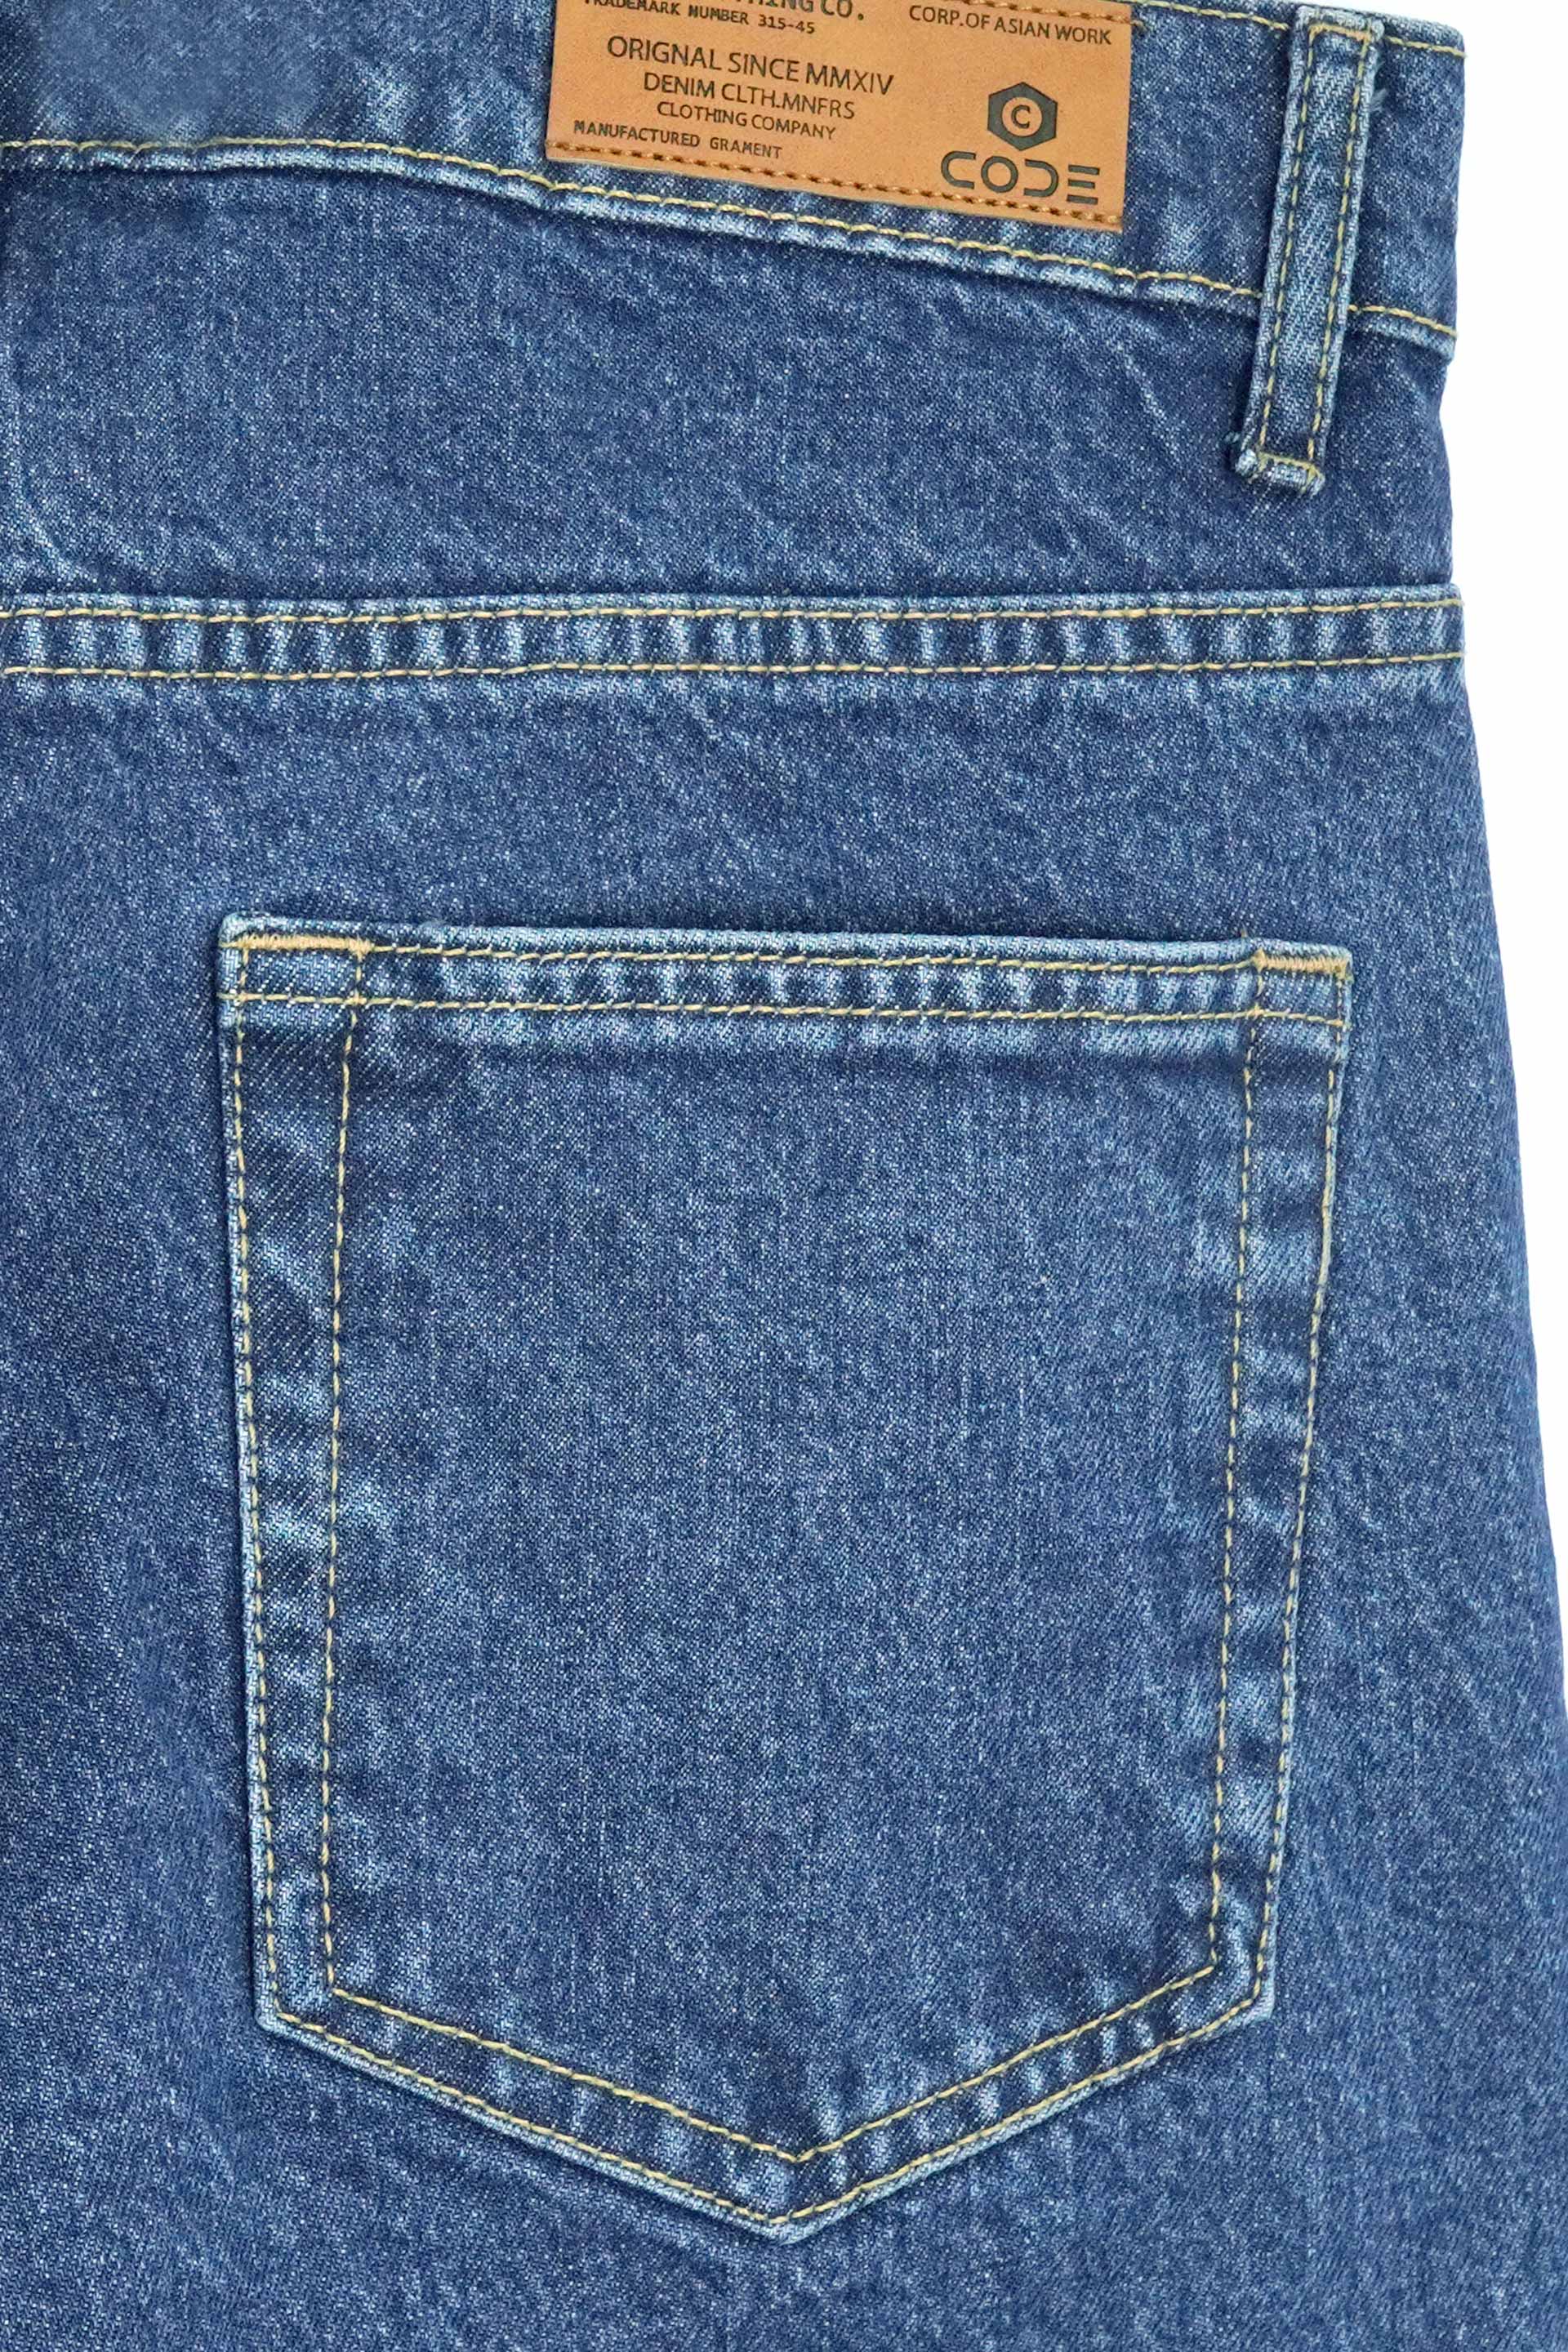 Blue Denim Jeans Tailor Fit